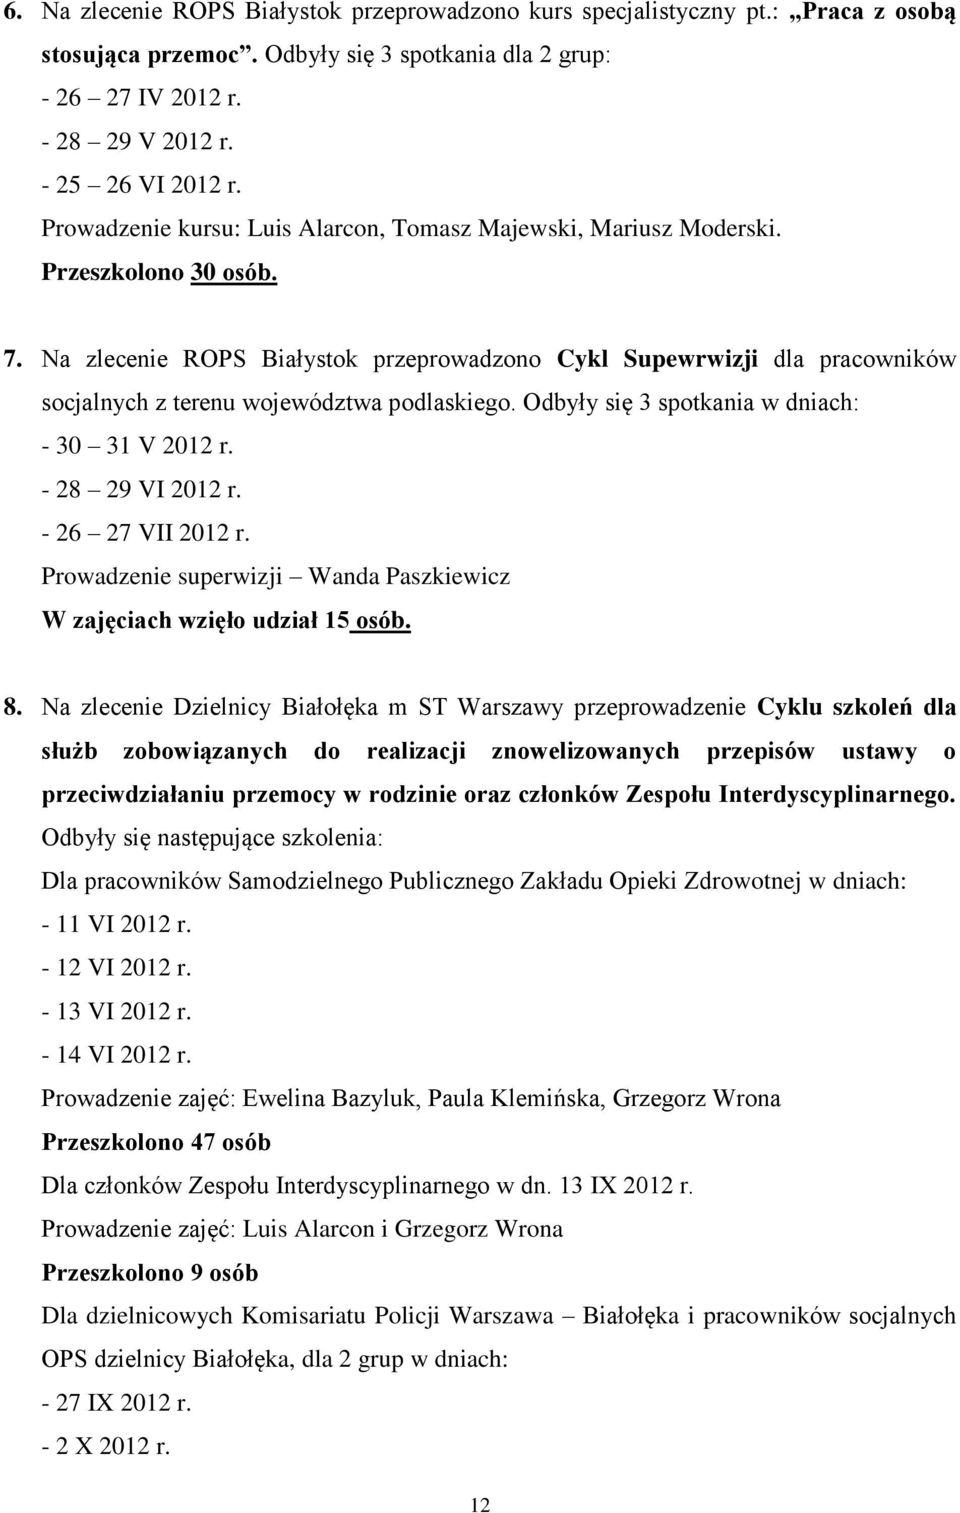 Na zlecenie ROPS Białystok przeprowadzono Cykl Supewrwizji dla pracowników socjalnych z terenu województwa podlaskiego. Odbyły się 3 spotkania w dniach: - 30 31 V 2012 r. - 28 29 VI 2012 r.